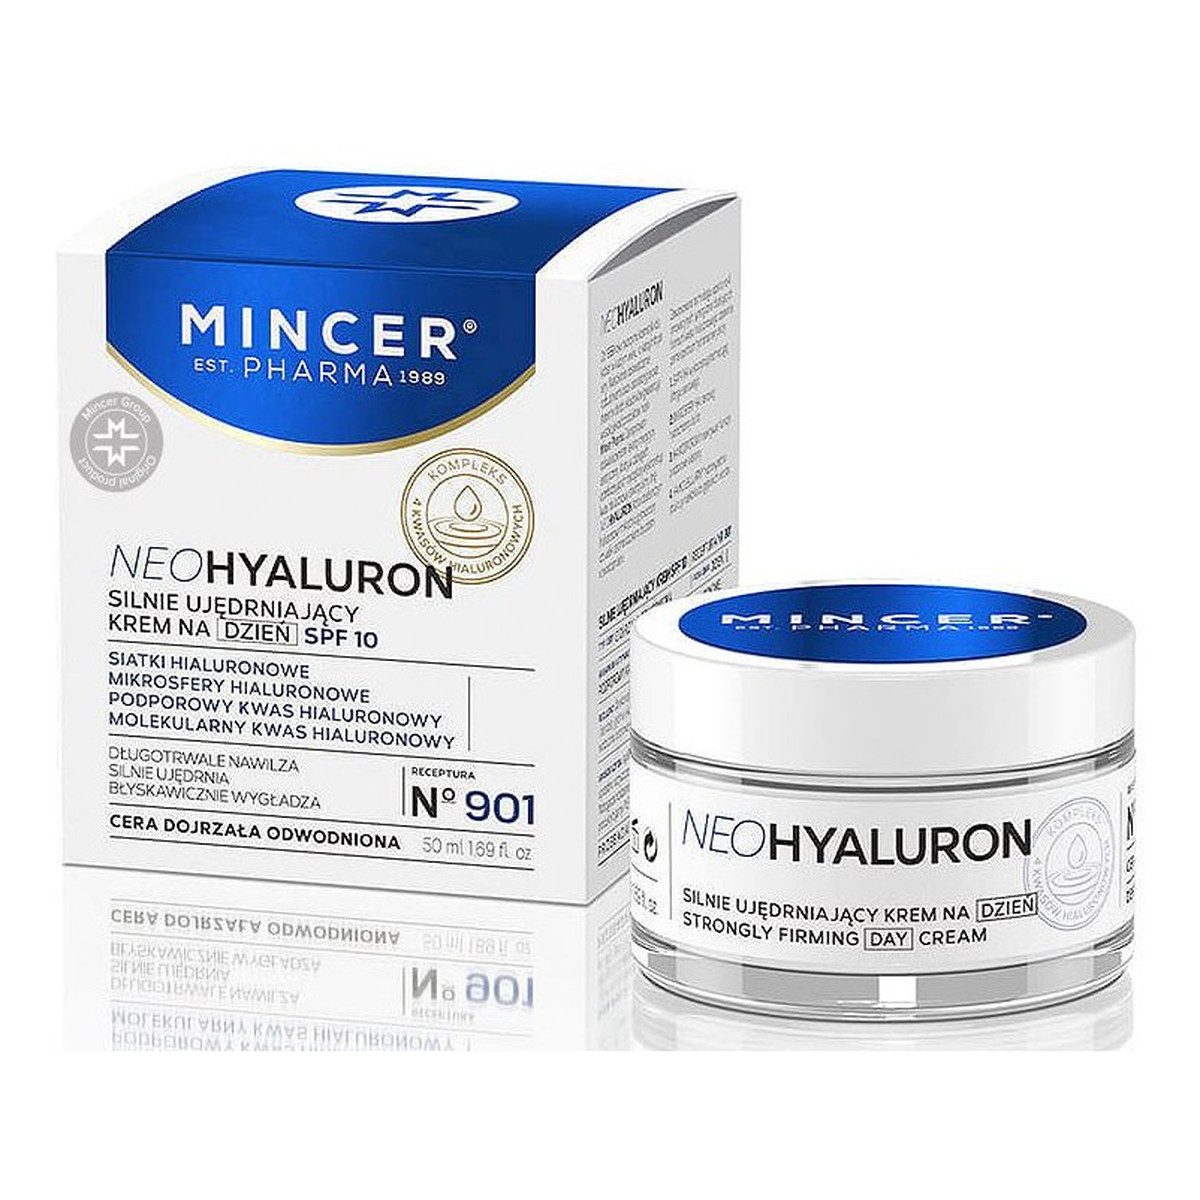 Mincer Pharma Neo Hyaluron krem na dzień do twarzy No901 50ml